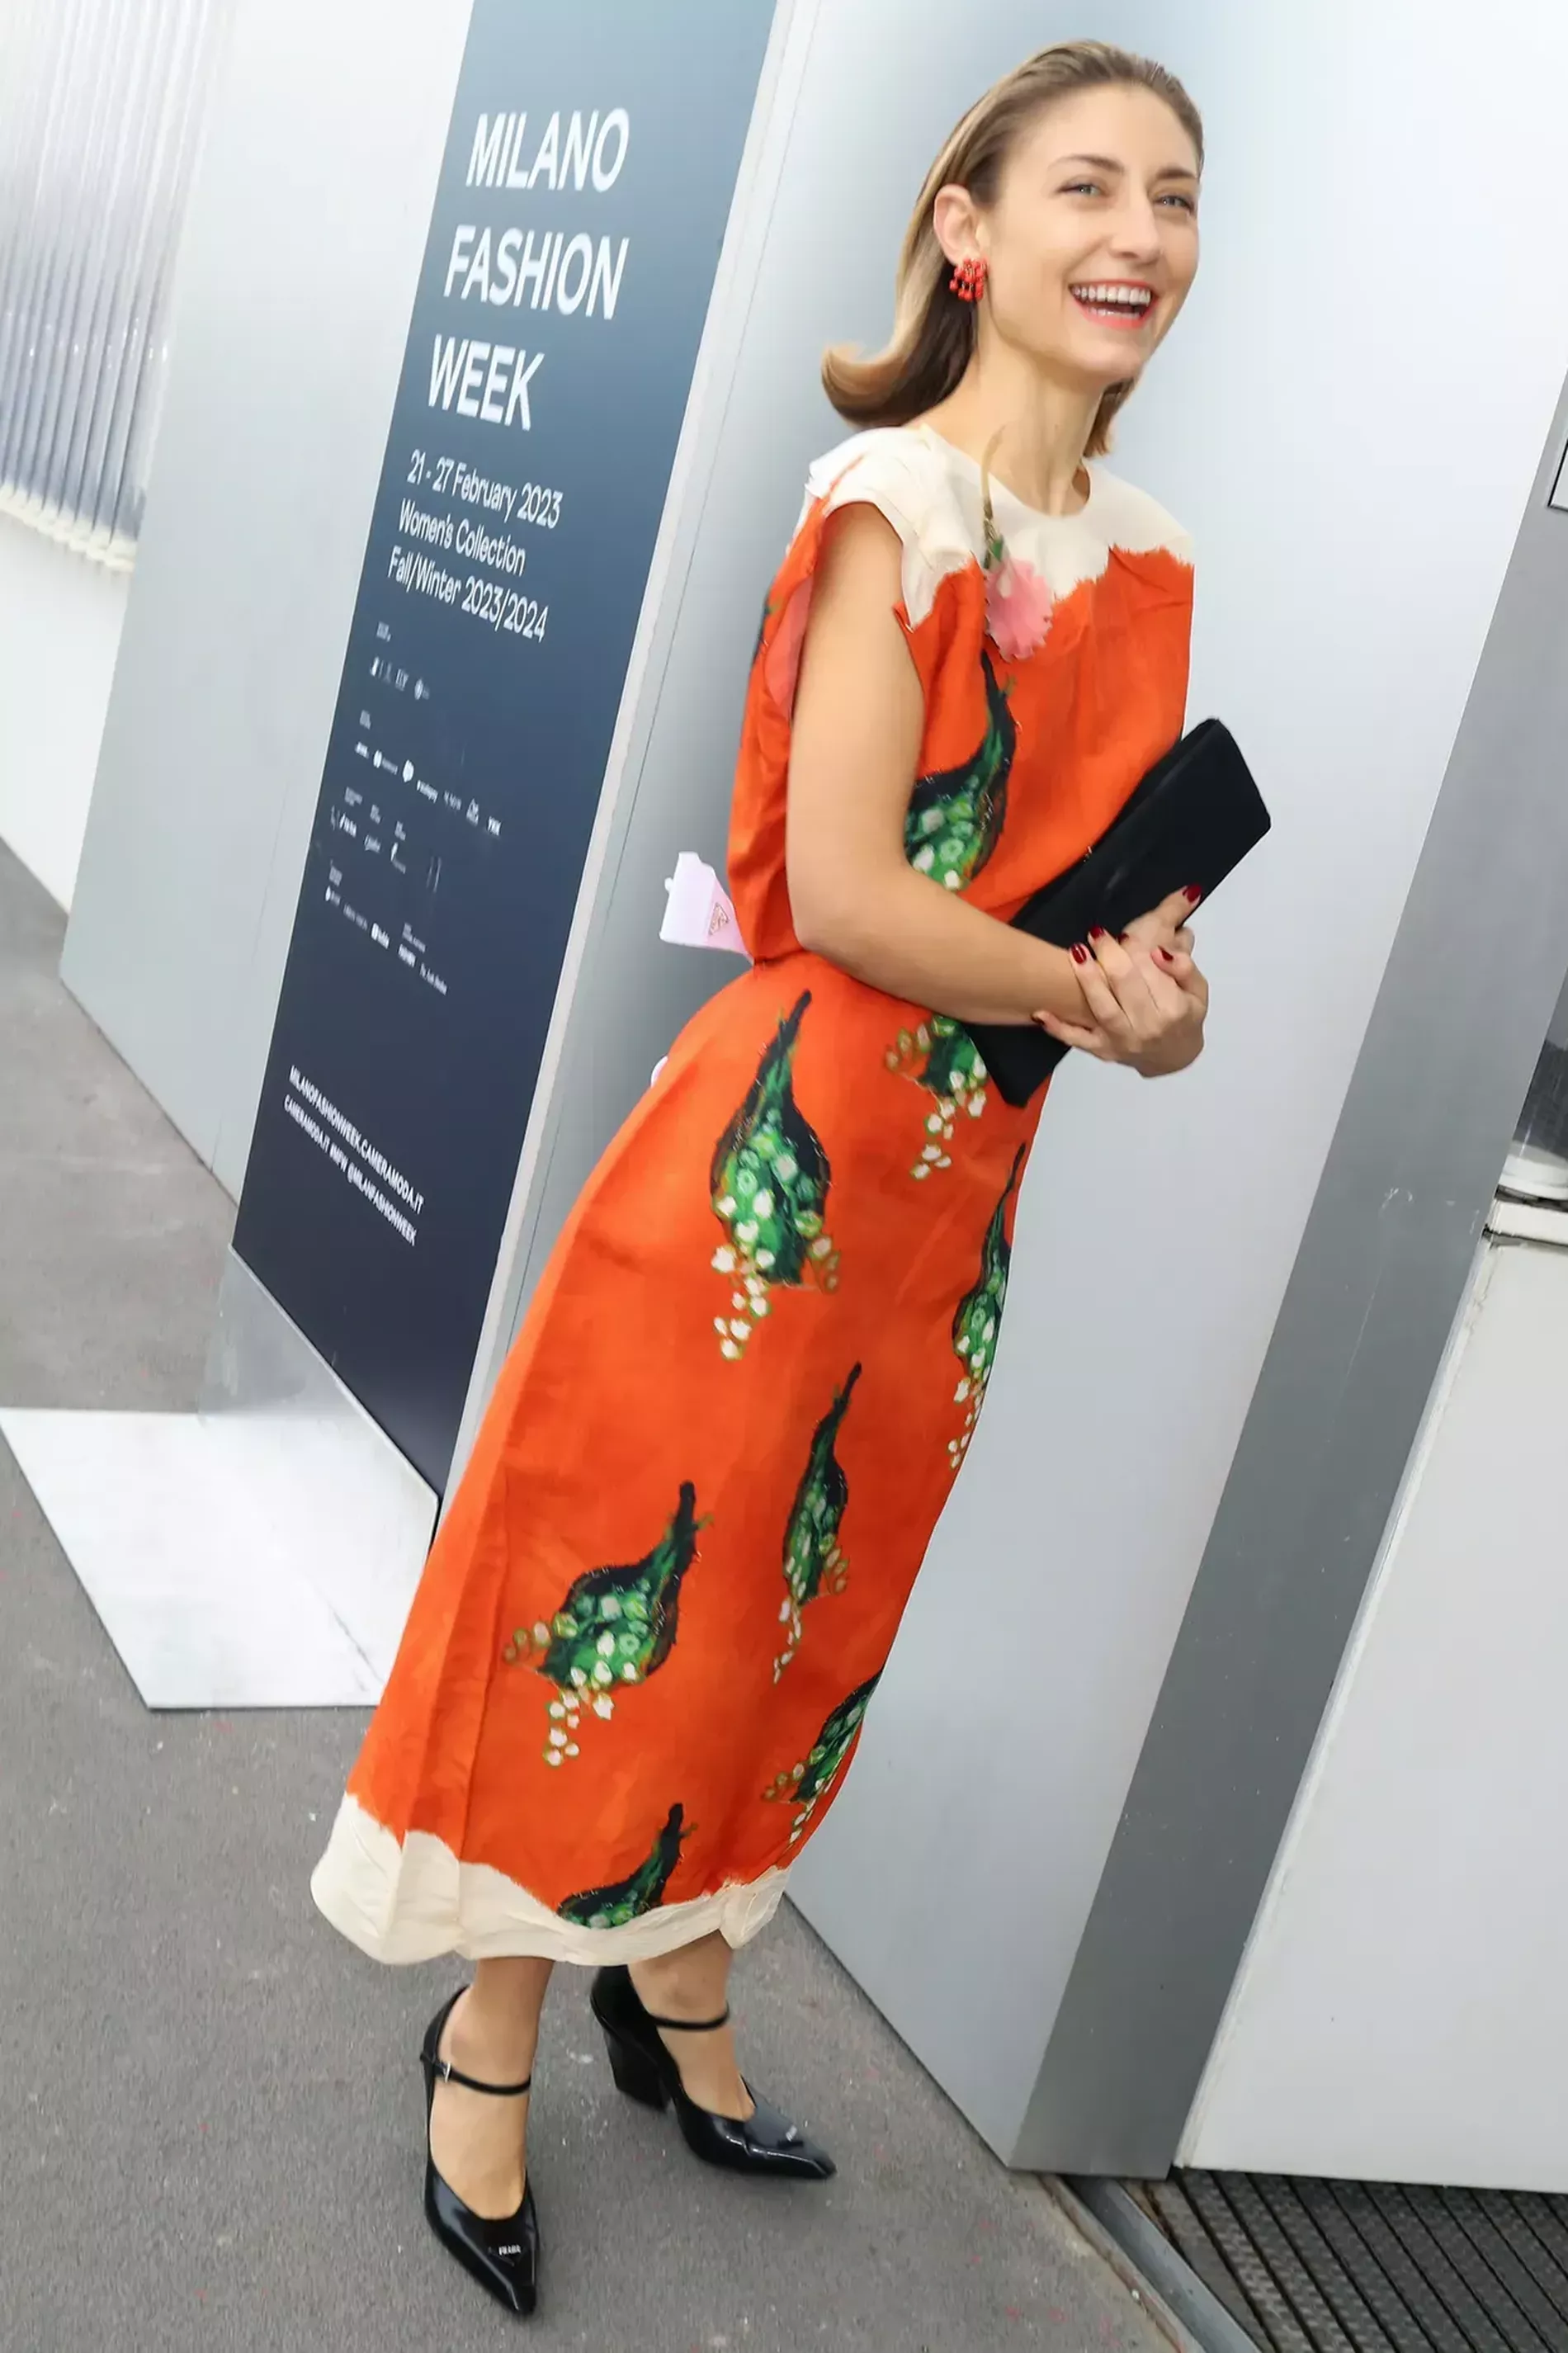 Milan fashion week guest wears orange glittery dress with black heels